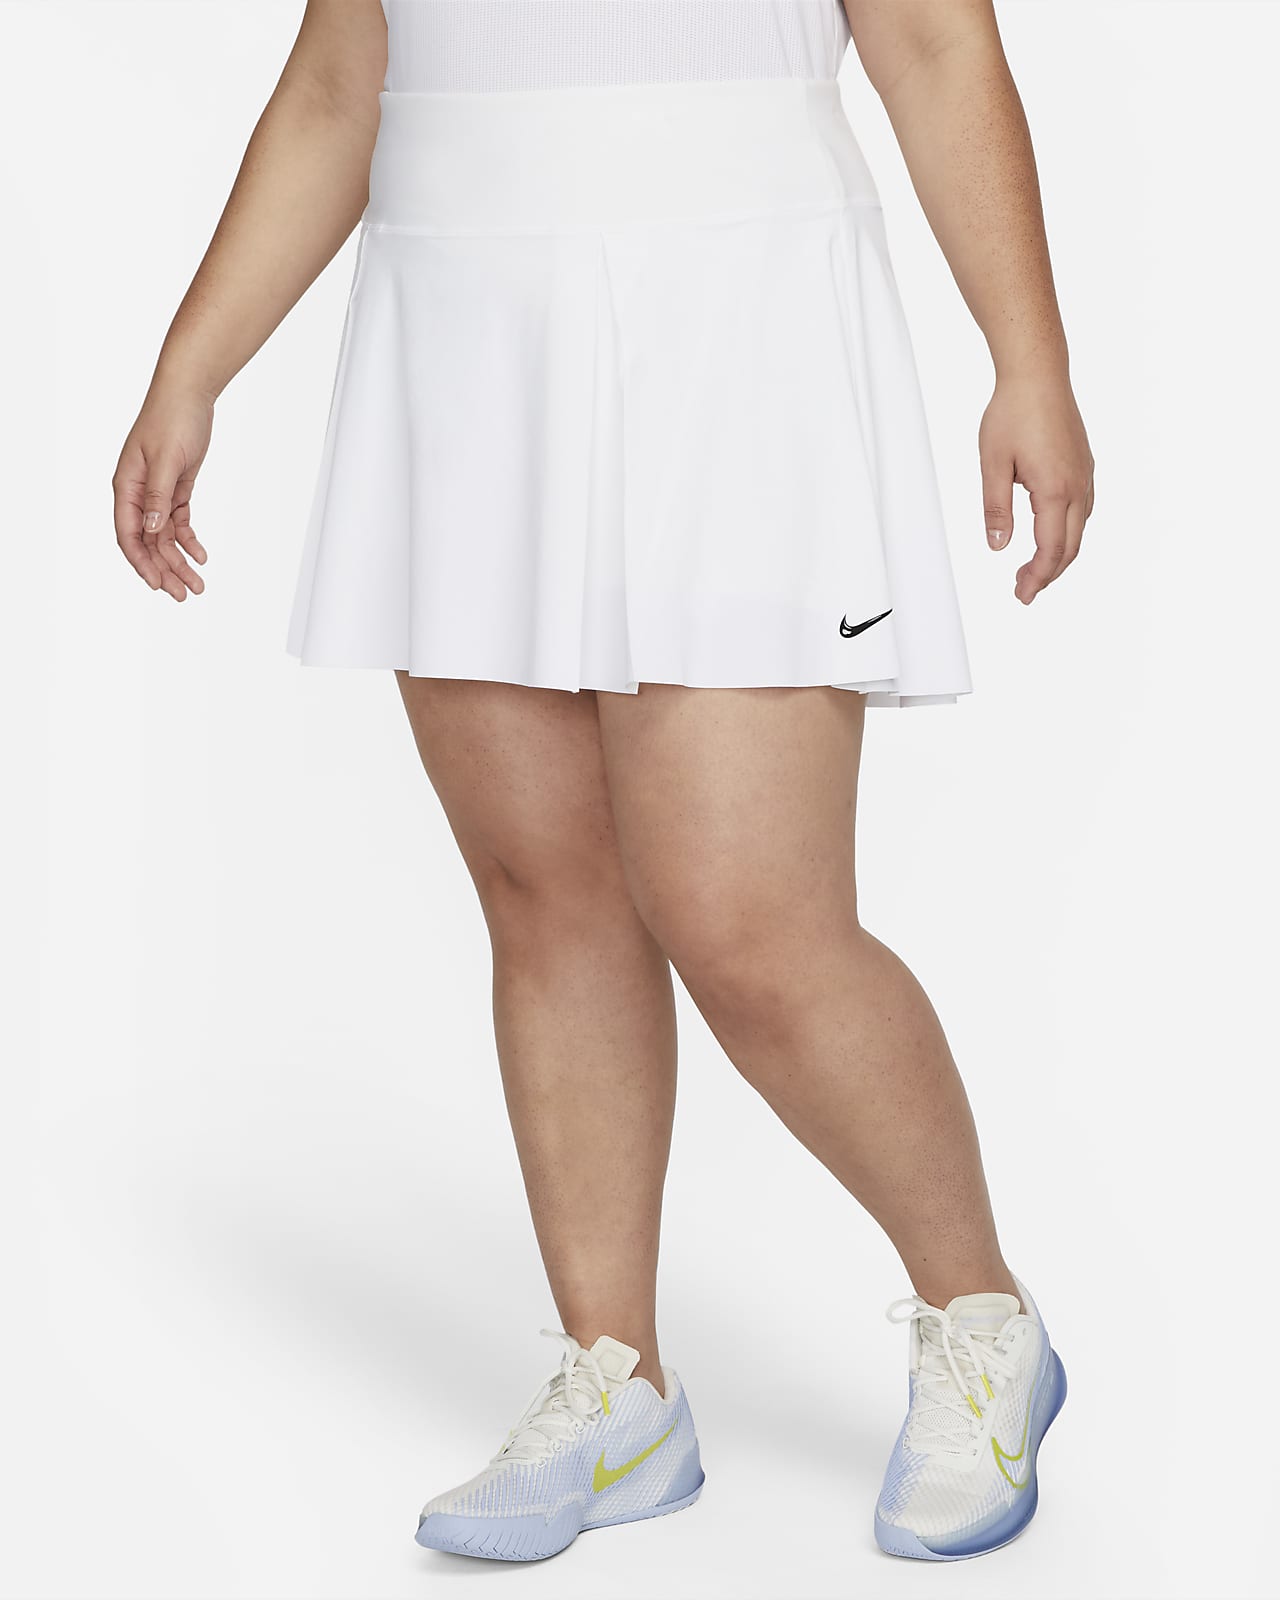 Nike Dri-FIT Get Fit Women's Tennis Pants - Black/White